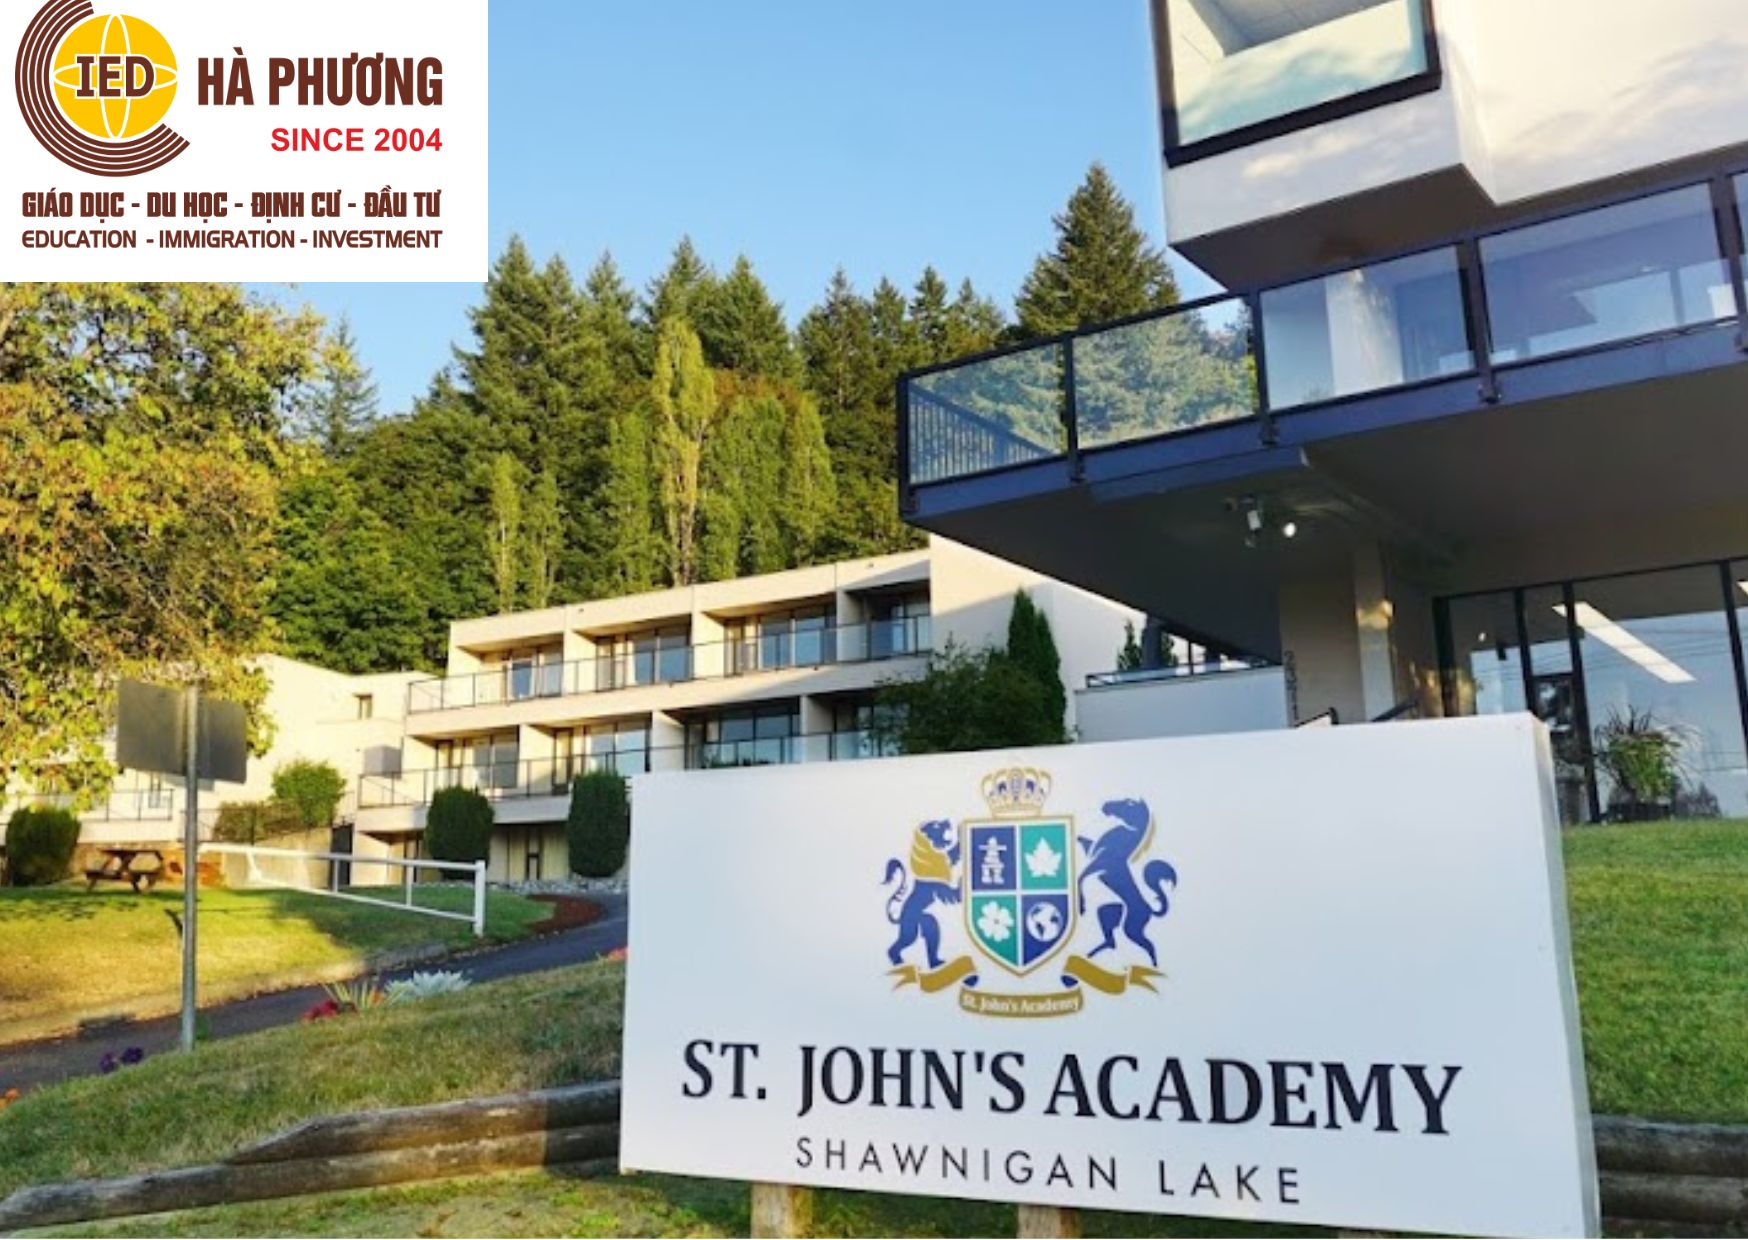 DU HỌC TRUNG HỌC, THPT Ở CANADA:  Học viện St. John's  Vancouver và Shawnigan Lake Campus